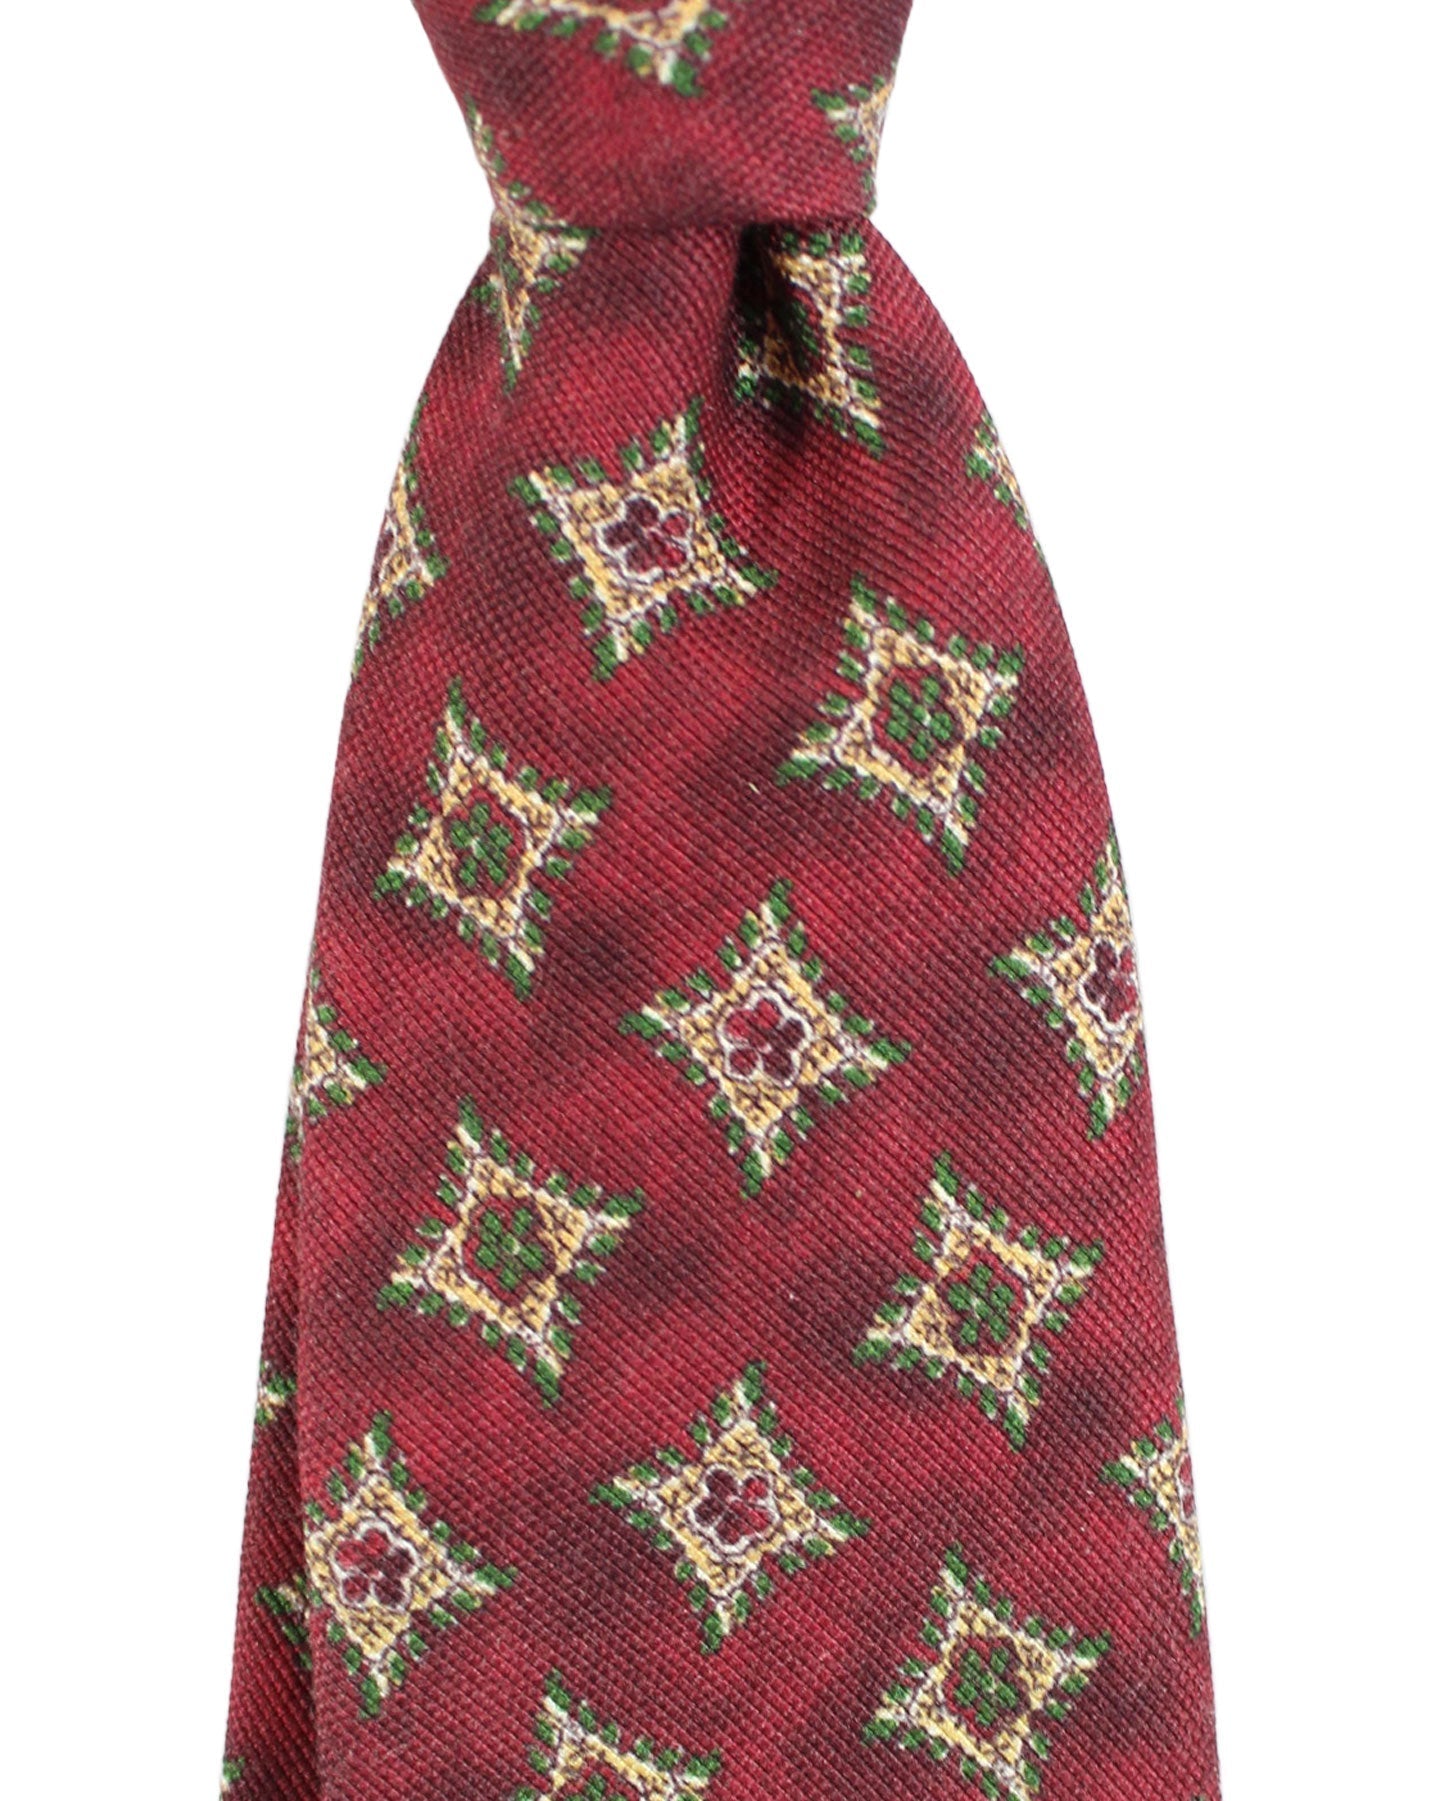 Kiton Tie Brown Green Geometric Design - Sevenfold Necktie